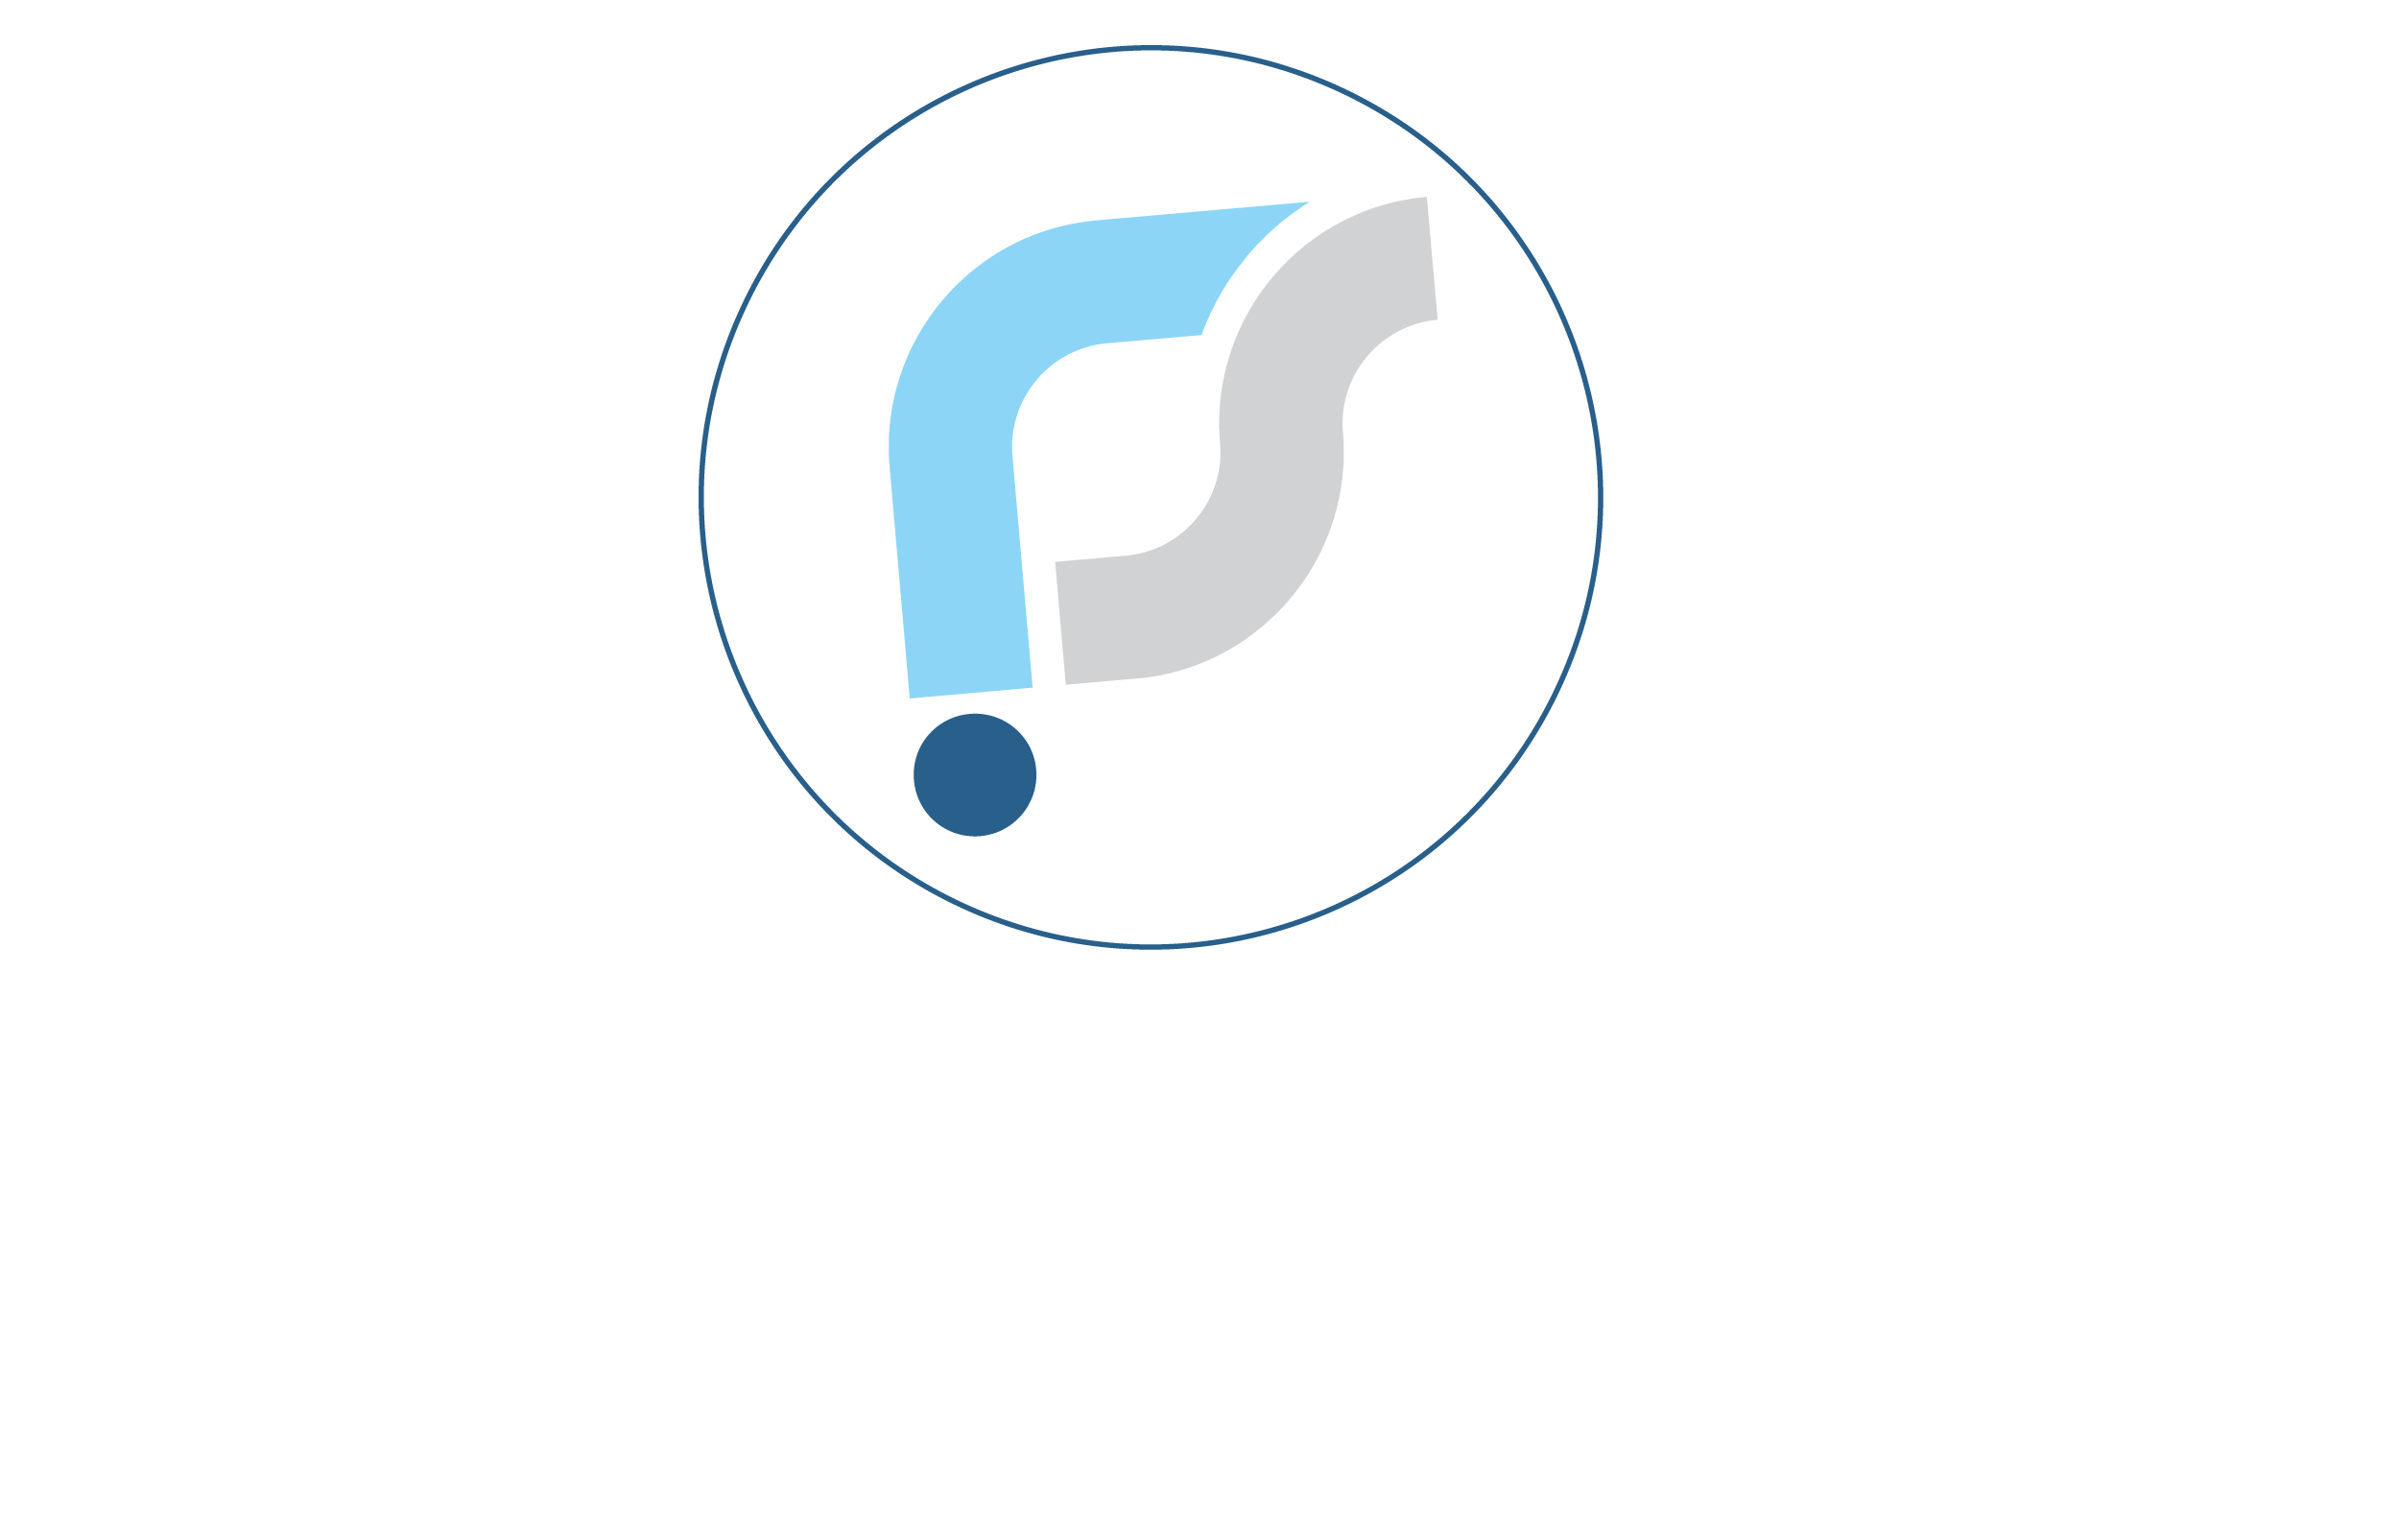 Rajarshi Solutions Footer Logo